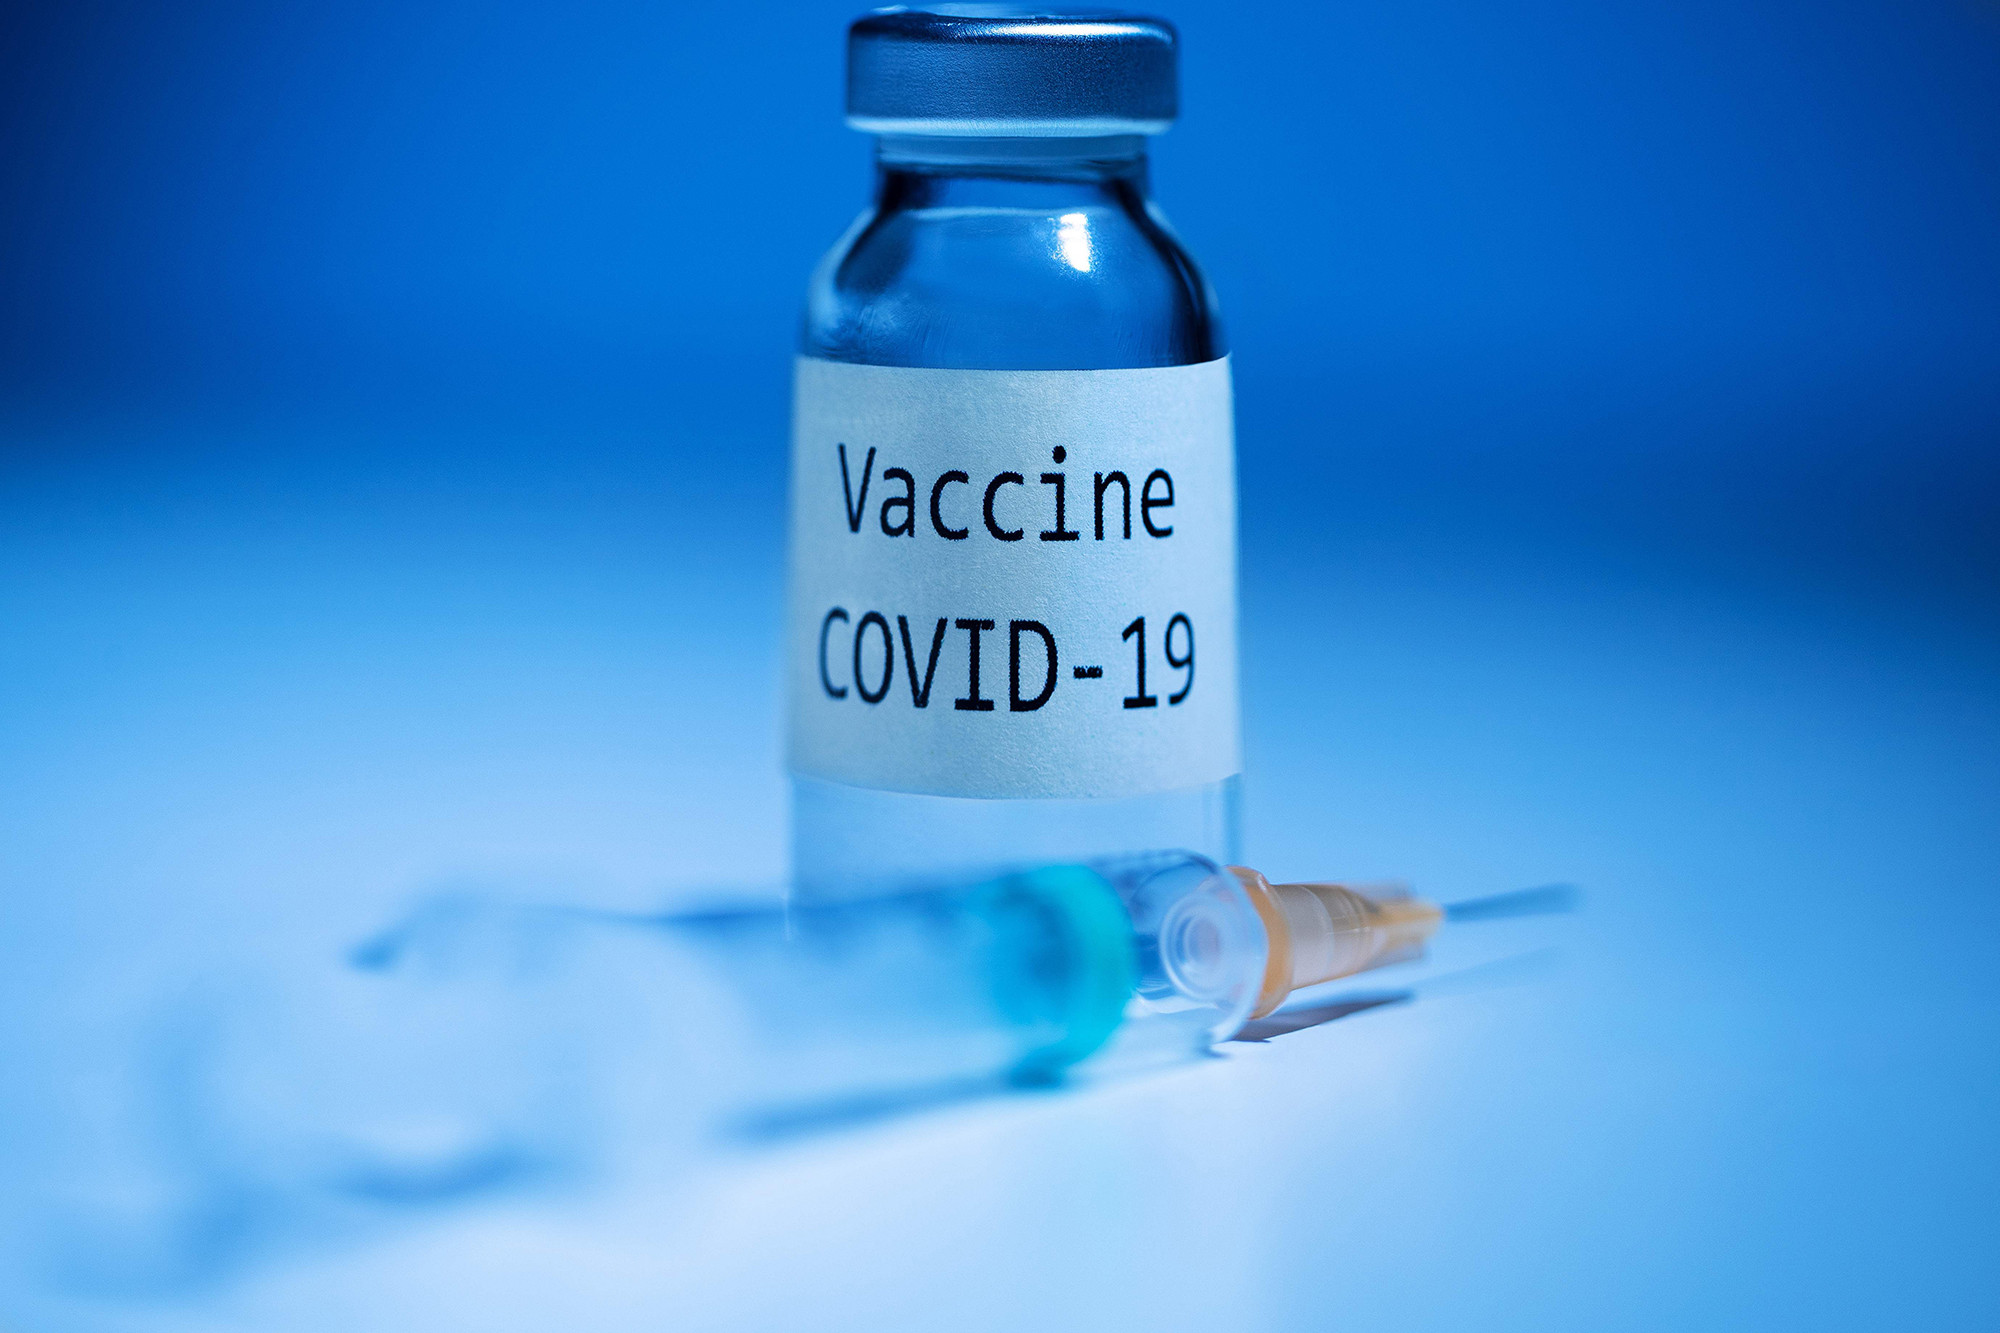 COVID---औद्योगिक श्रमिकों के टीकाकरण के लिए विशेष शिविर की मांग